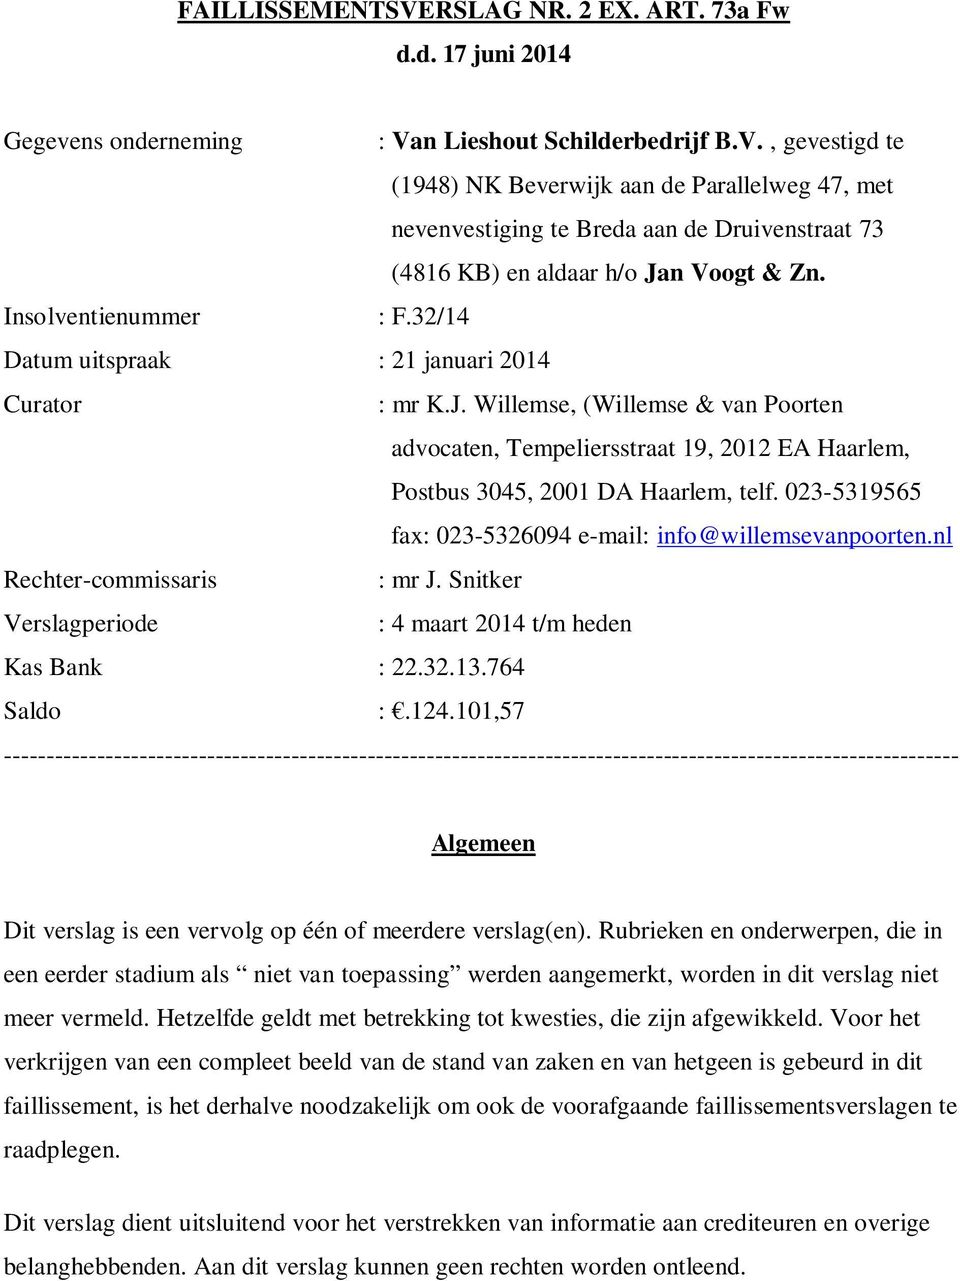 023-5319565 fax: 023-5326094 e-mail: info@willemsevanpoorten.nl Rechter-commissaris : mr J. Snitker Verslagperiode : 4 maart 2014 t/m heden Kas Bank : 22.32.13.764 Saldo :.124.